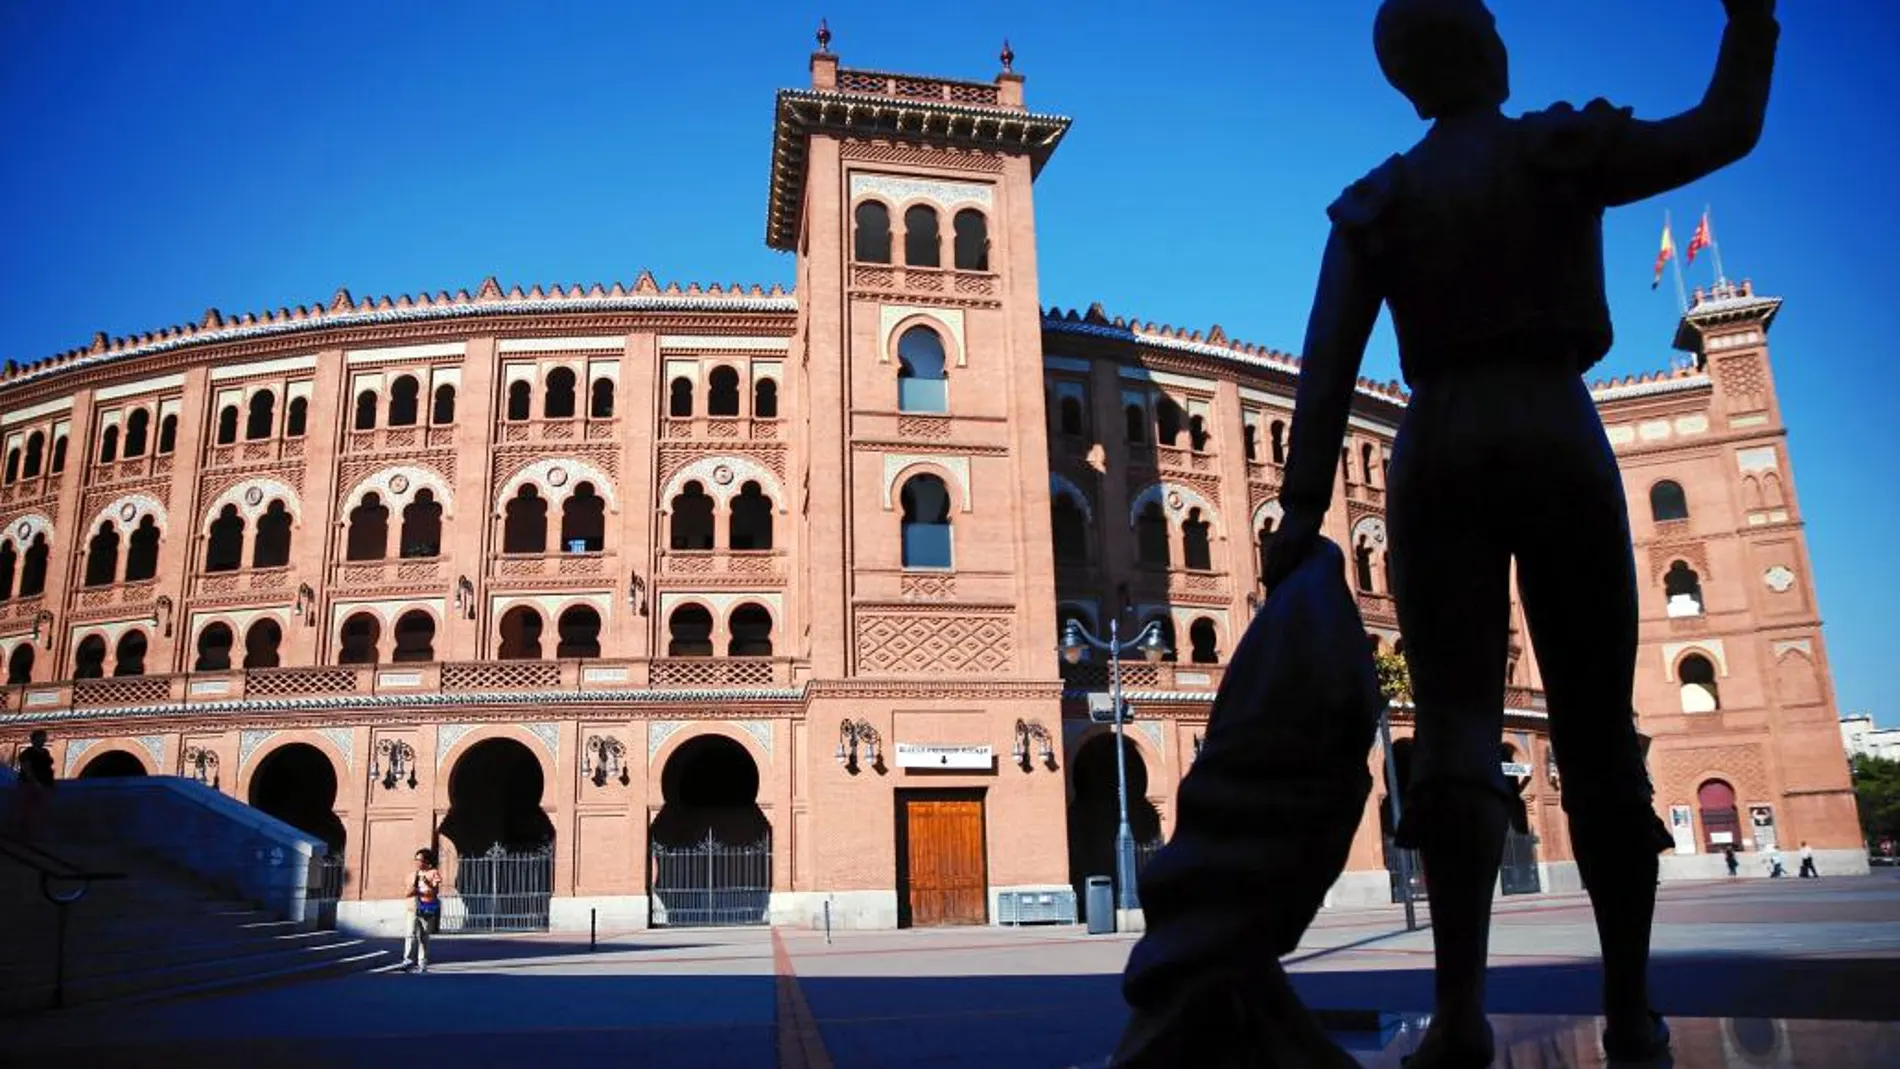 La plaza de toros de Madrid comenzó a construirse en 1929 y desde 1994 es Bien de Interés Cultural